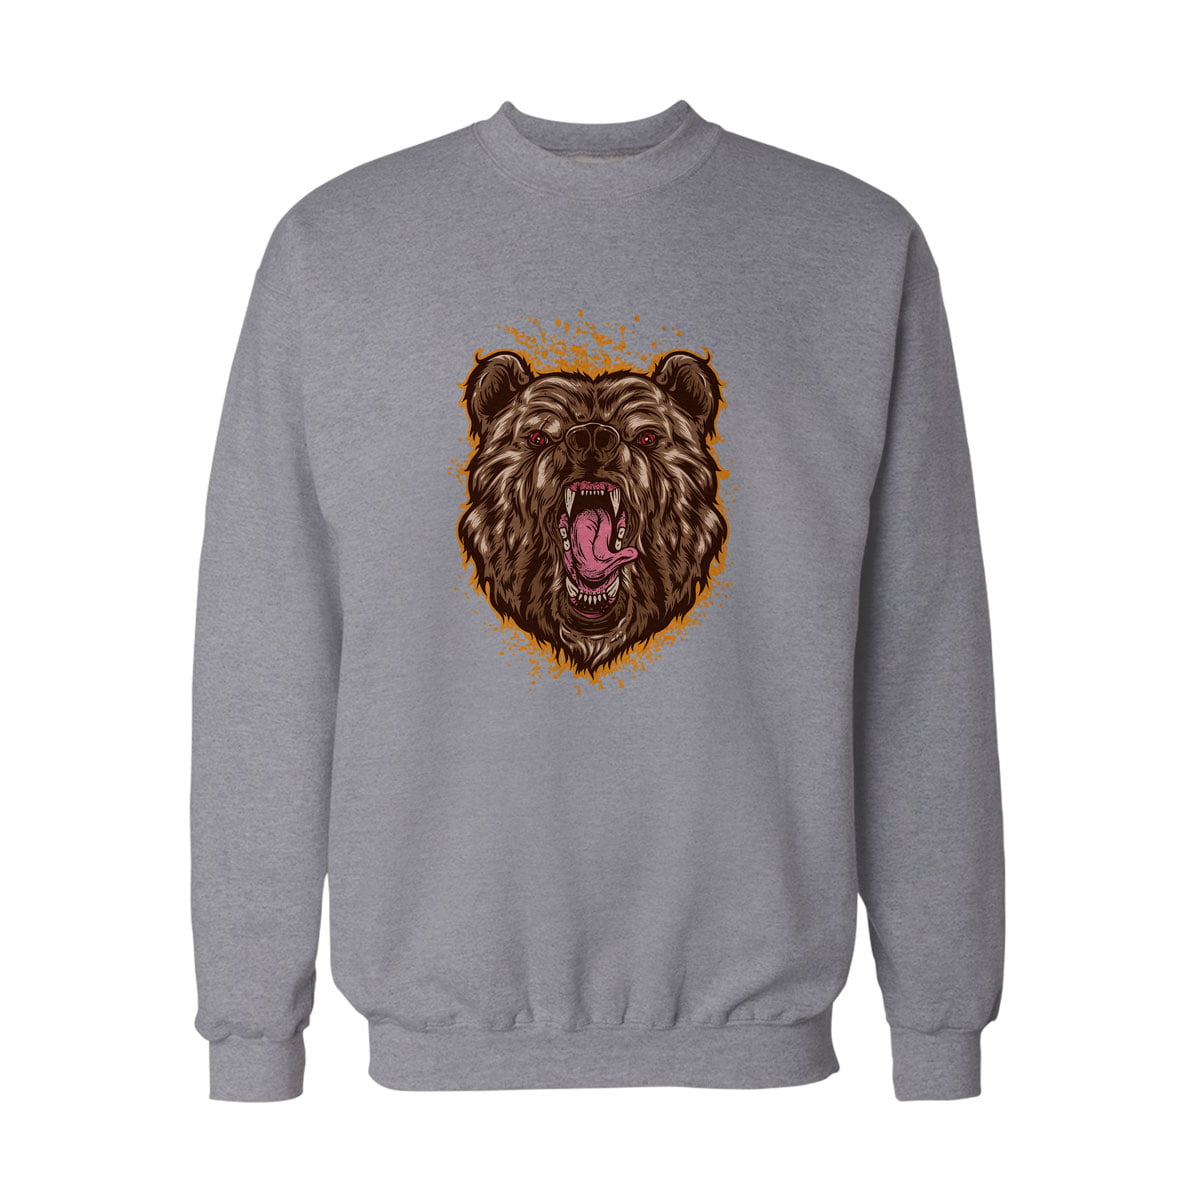 Fx japan culture 8 sweatshirt g - beast bear (ayı) baskılı sweatshirt - figurex